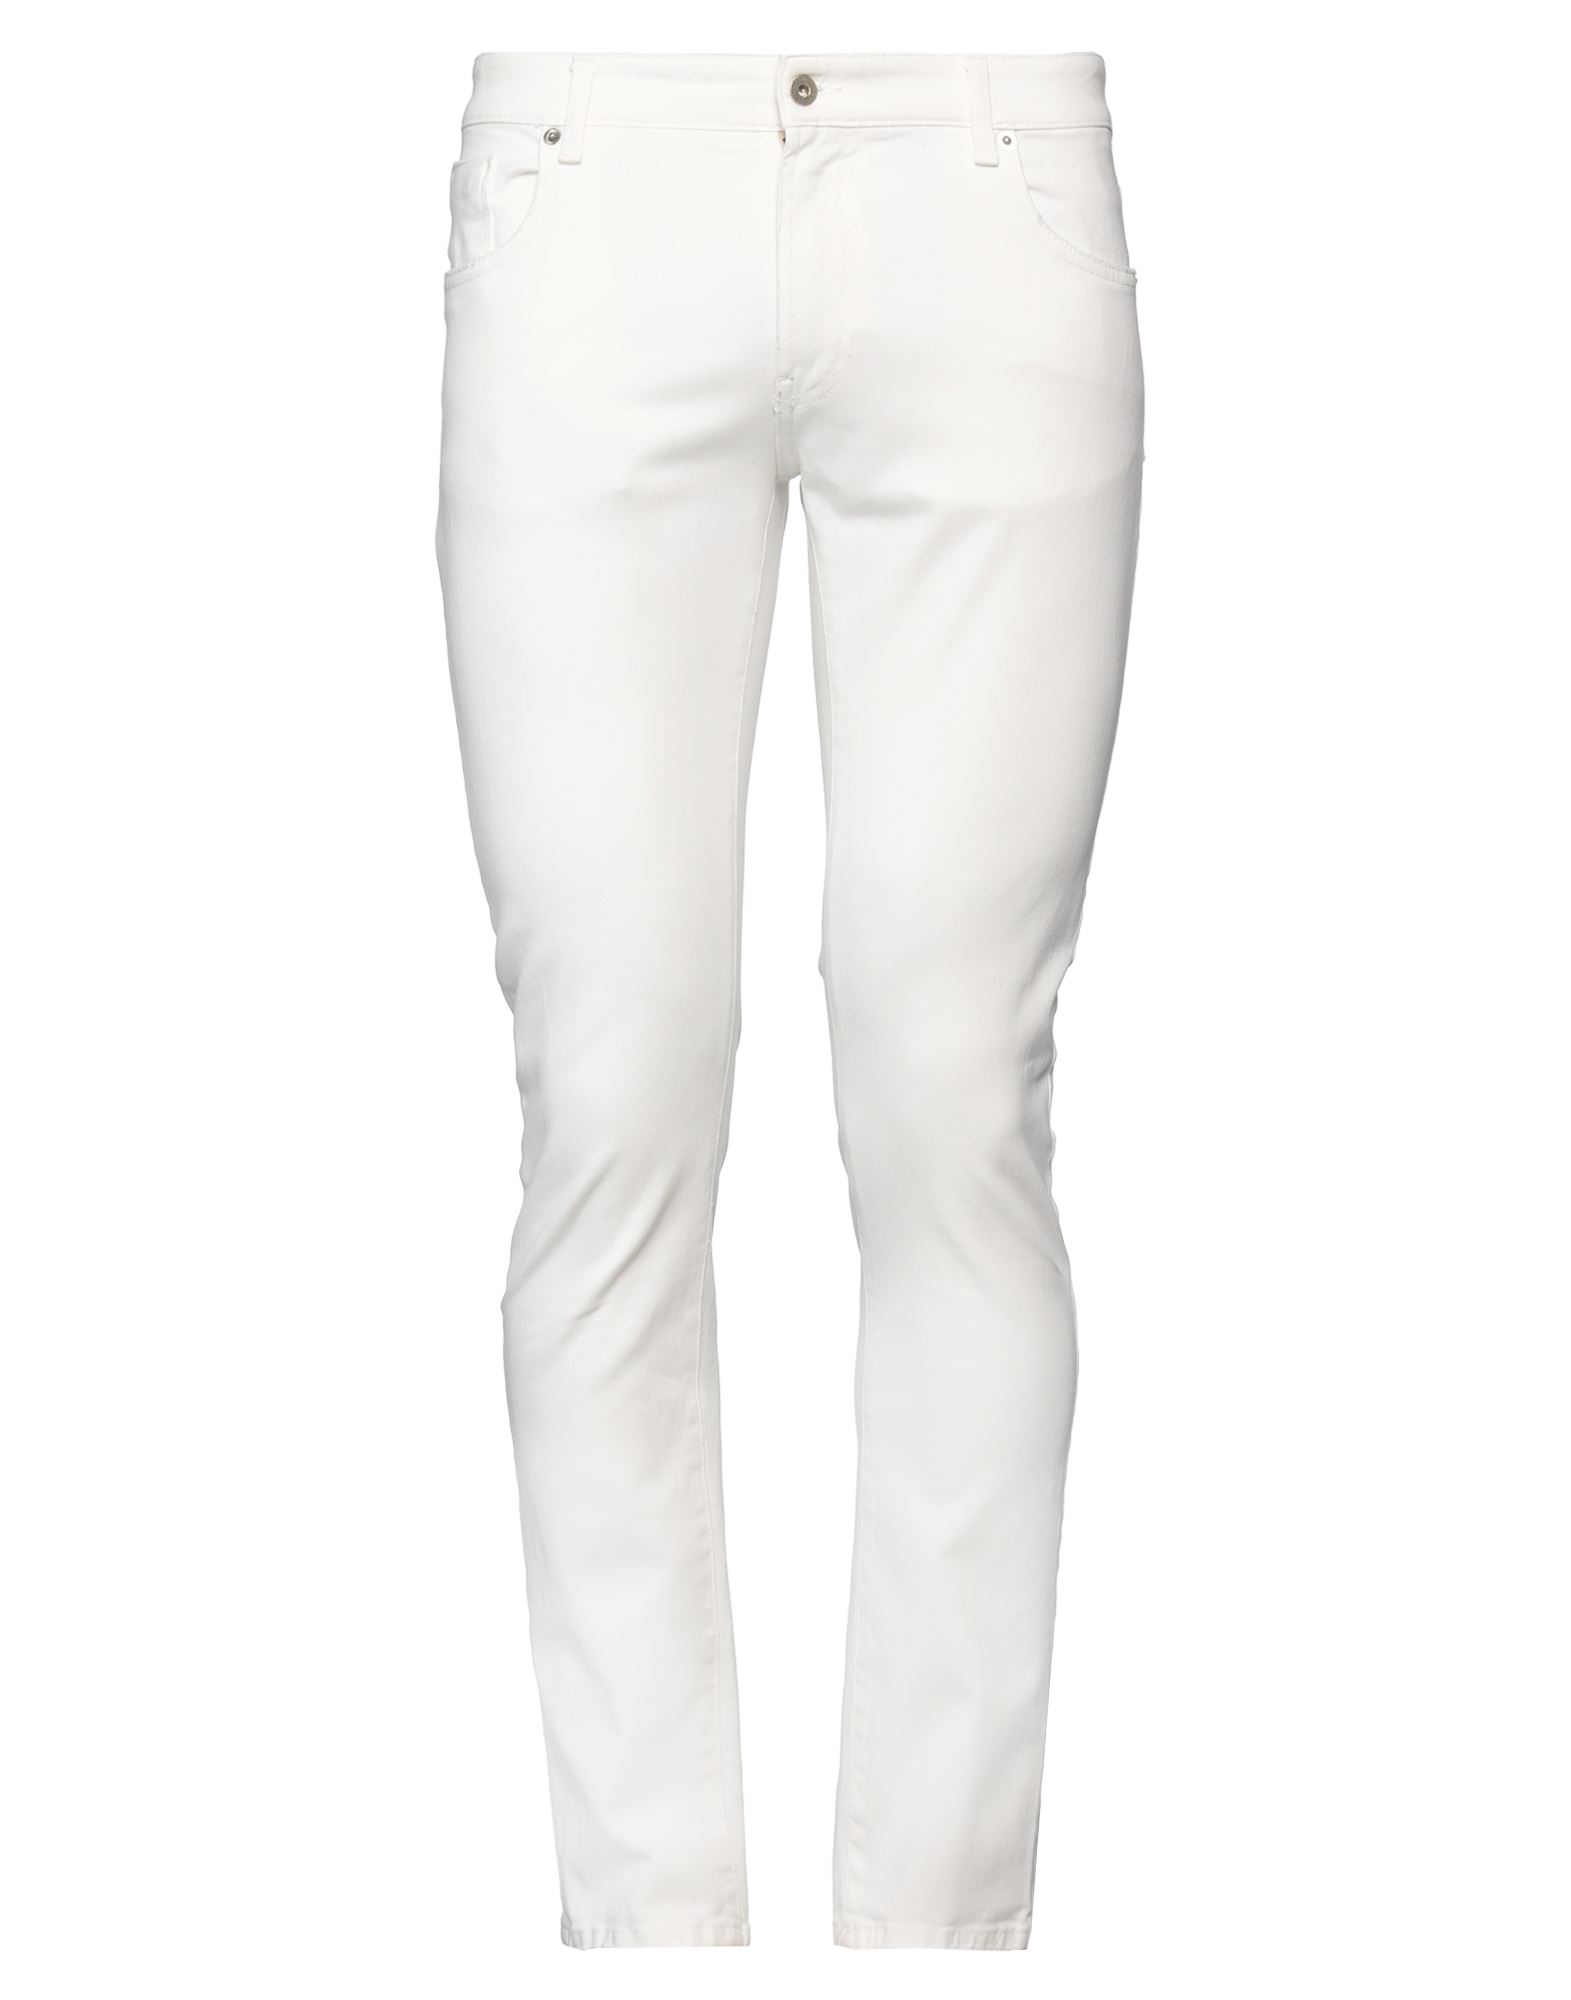 Shop Messagerie Man Pants White Size 31 Cotton, Elastane